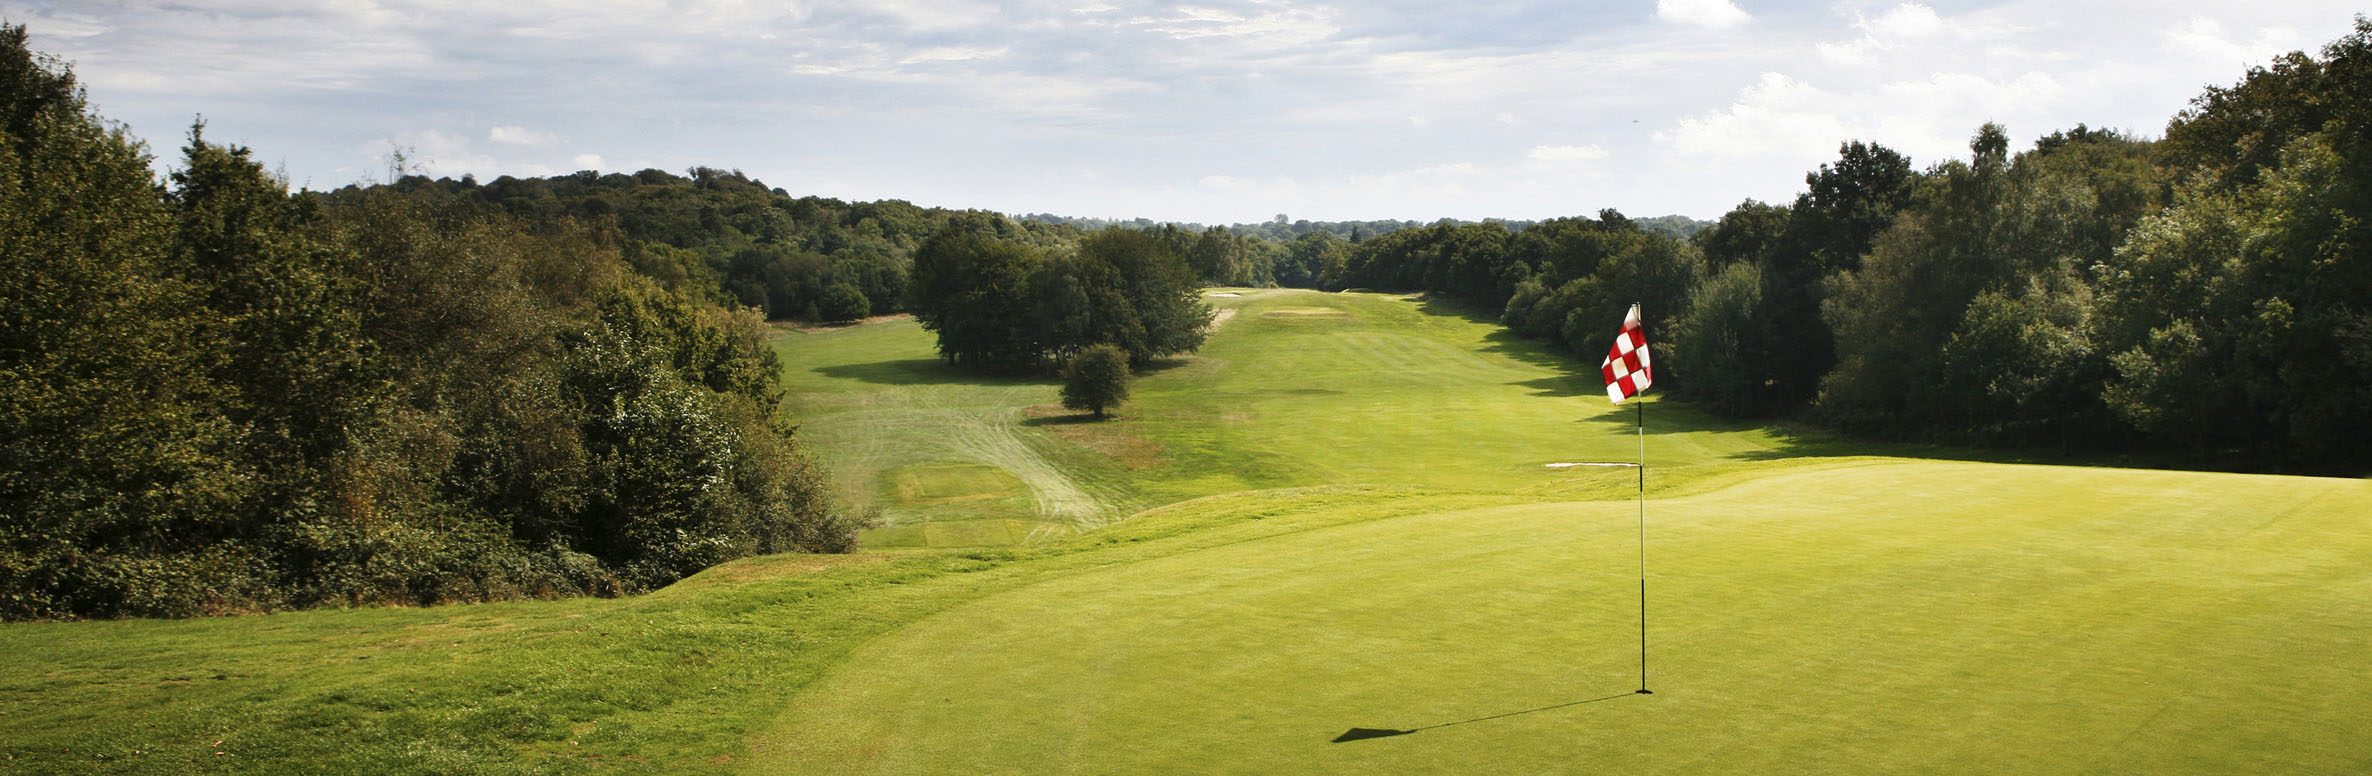 Mannings Heath Golf Club No. 13